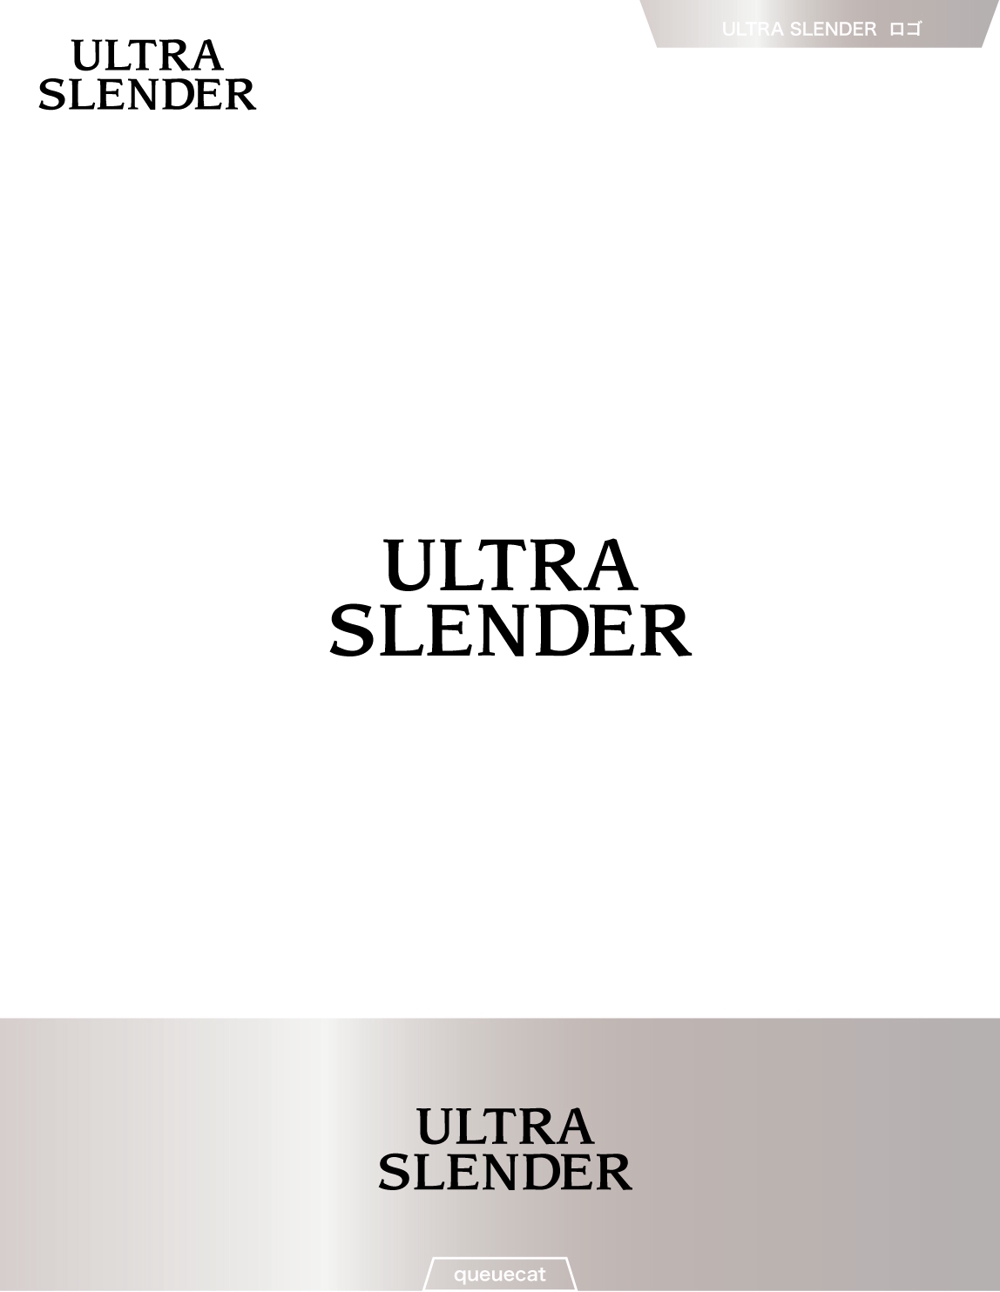 ULTRA SLENDER4_1.jpg